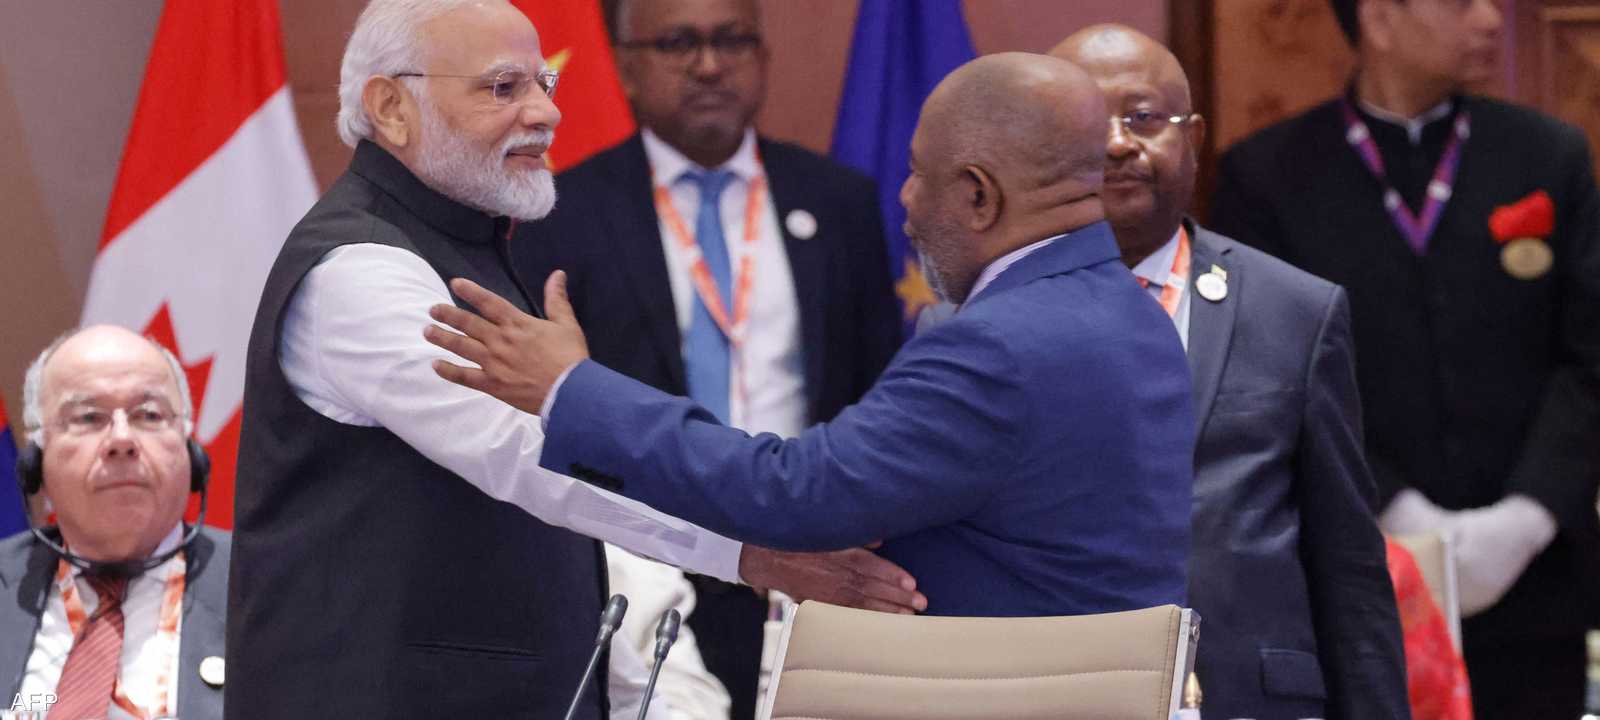 رئيس الوزراء الهندي يصافح غزالي عثماني رئيس الاتحاد الأفريقي